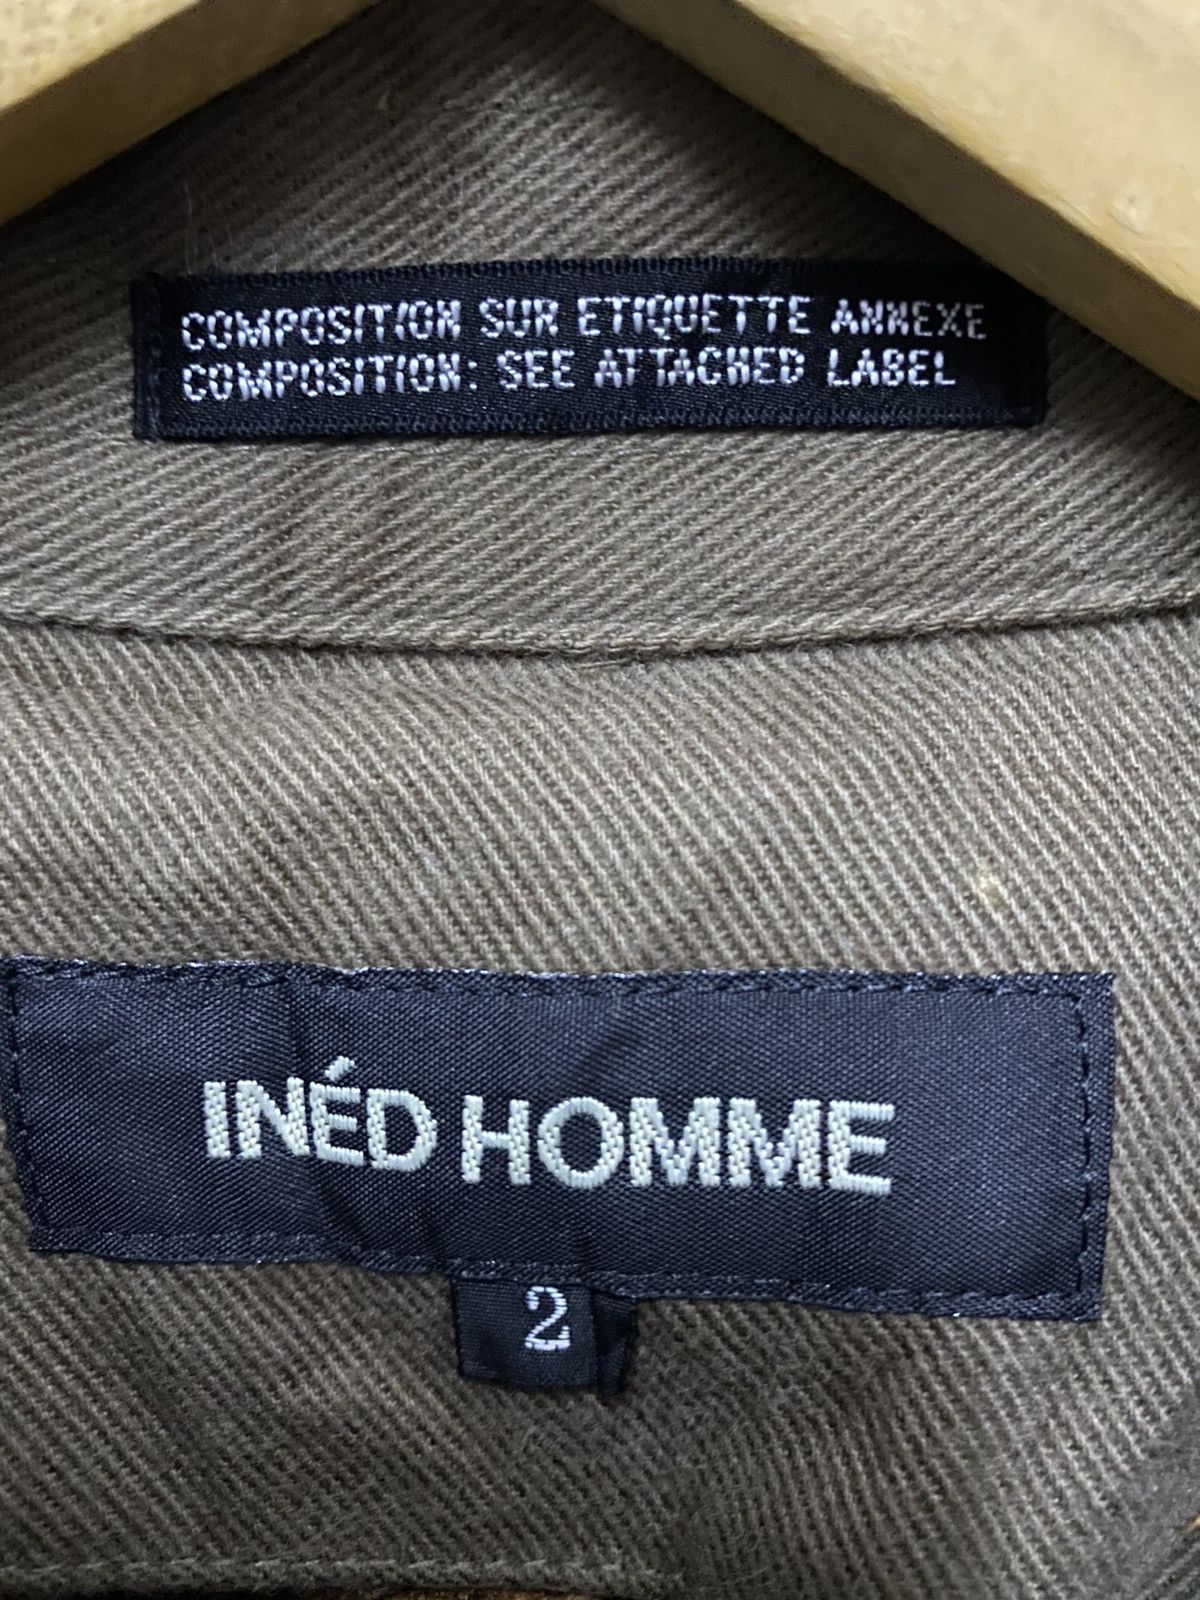 INED HOMME by Yohji Yamamoto Multipocket Jacket - 8